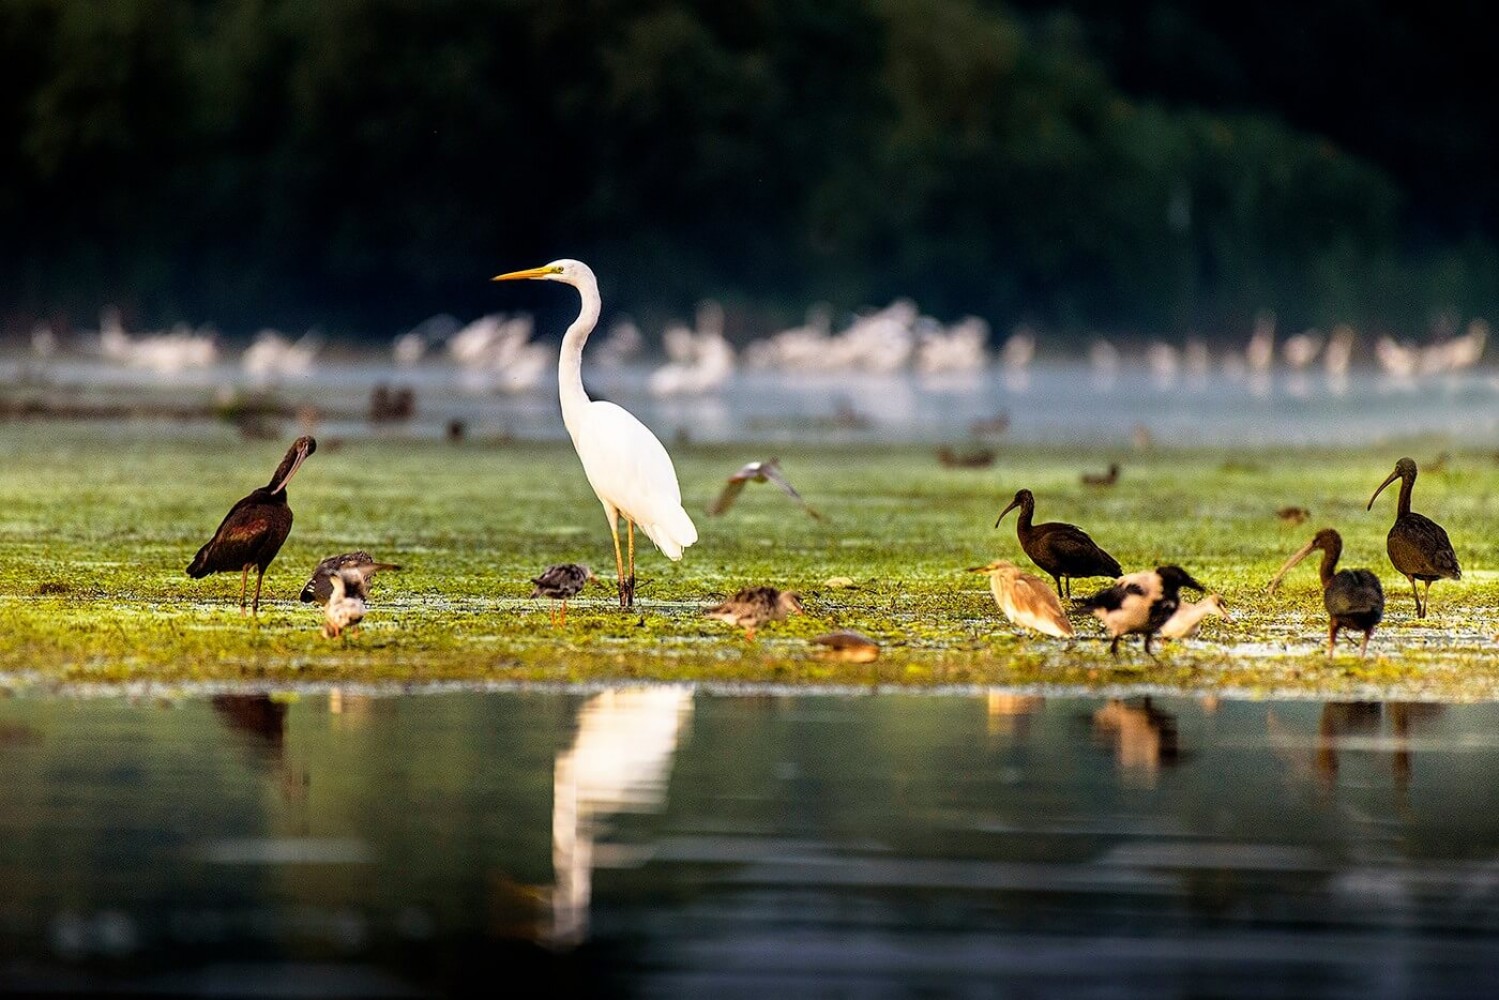 Delta Dunării - păsări